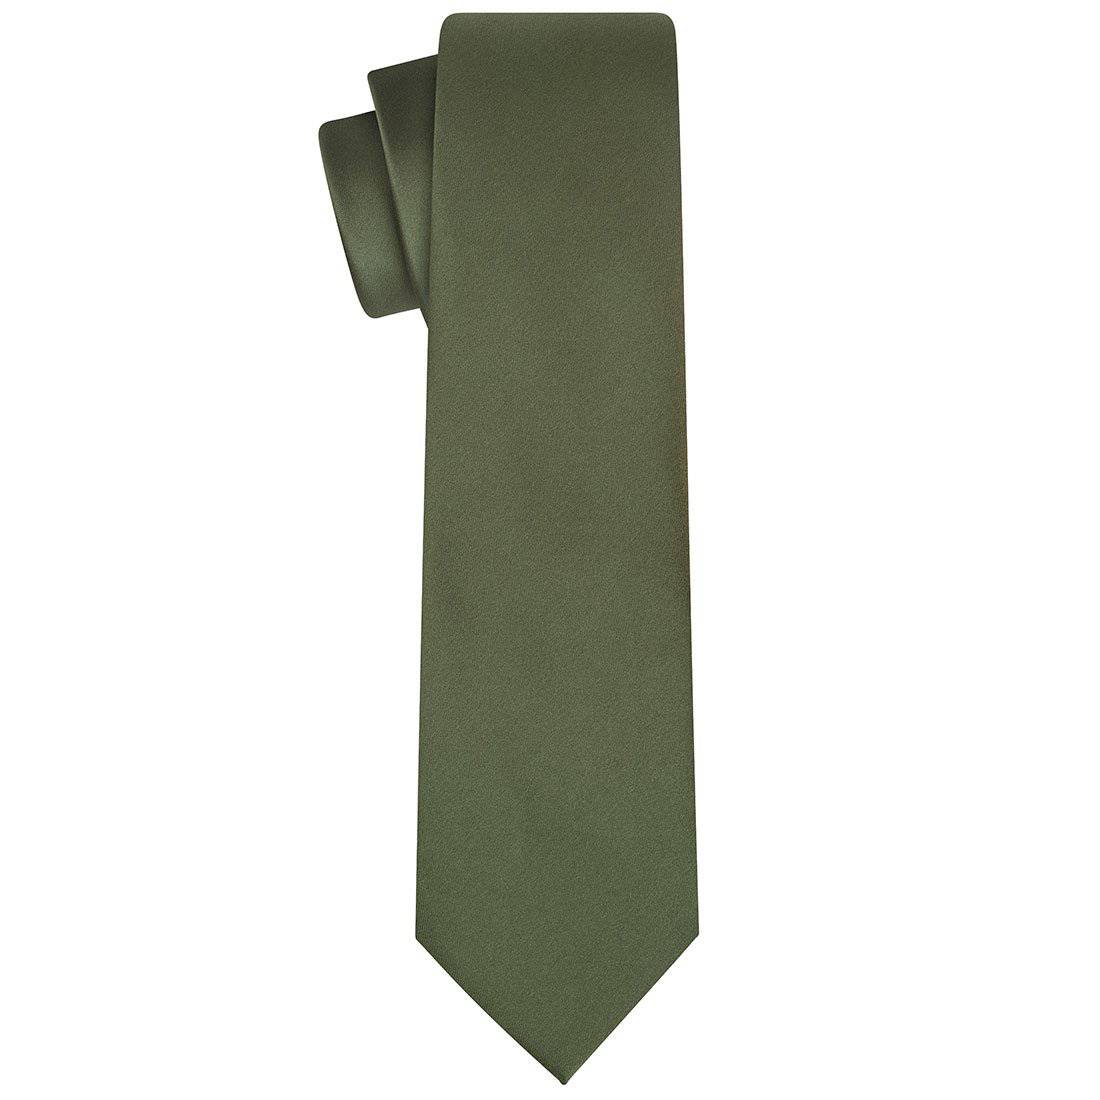 Olive Satin Tie - Tie, bowtie, pocket square  | Kissties